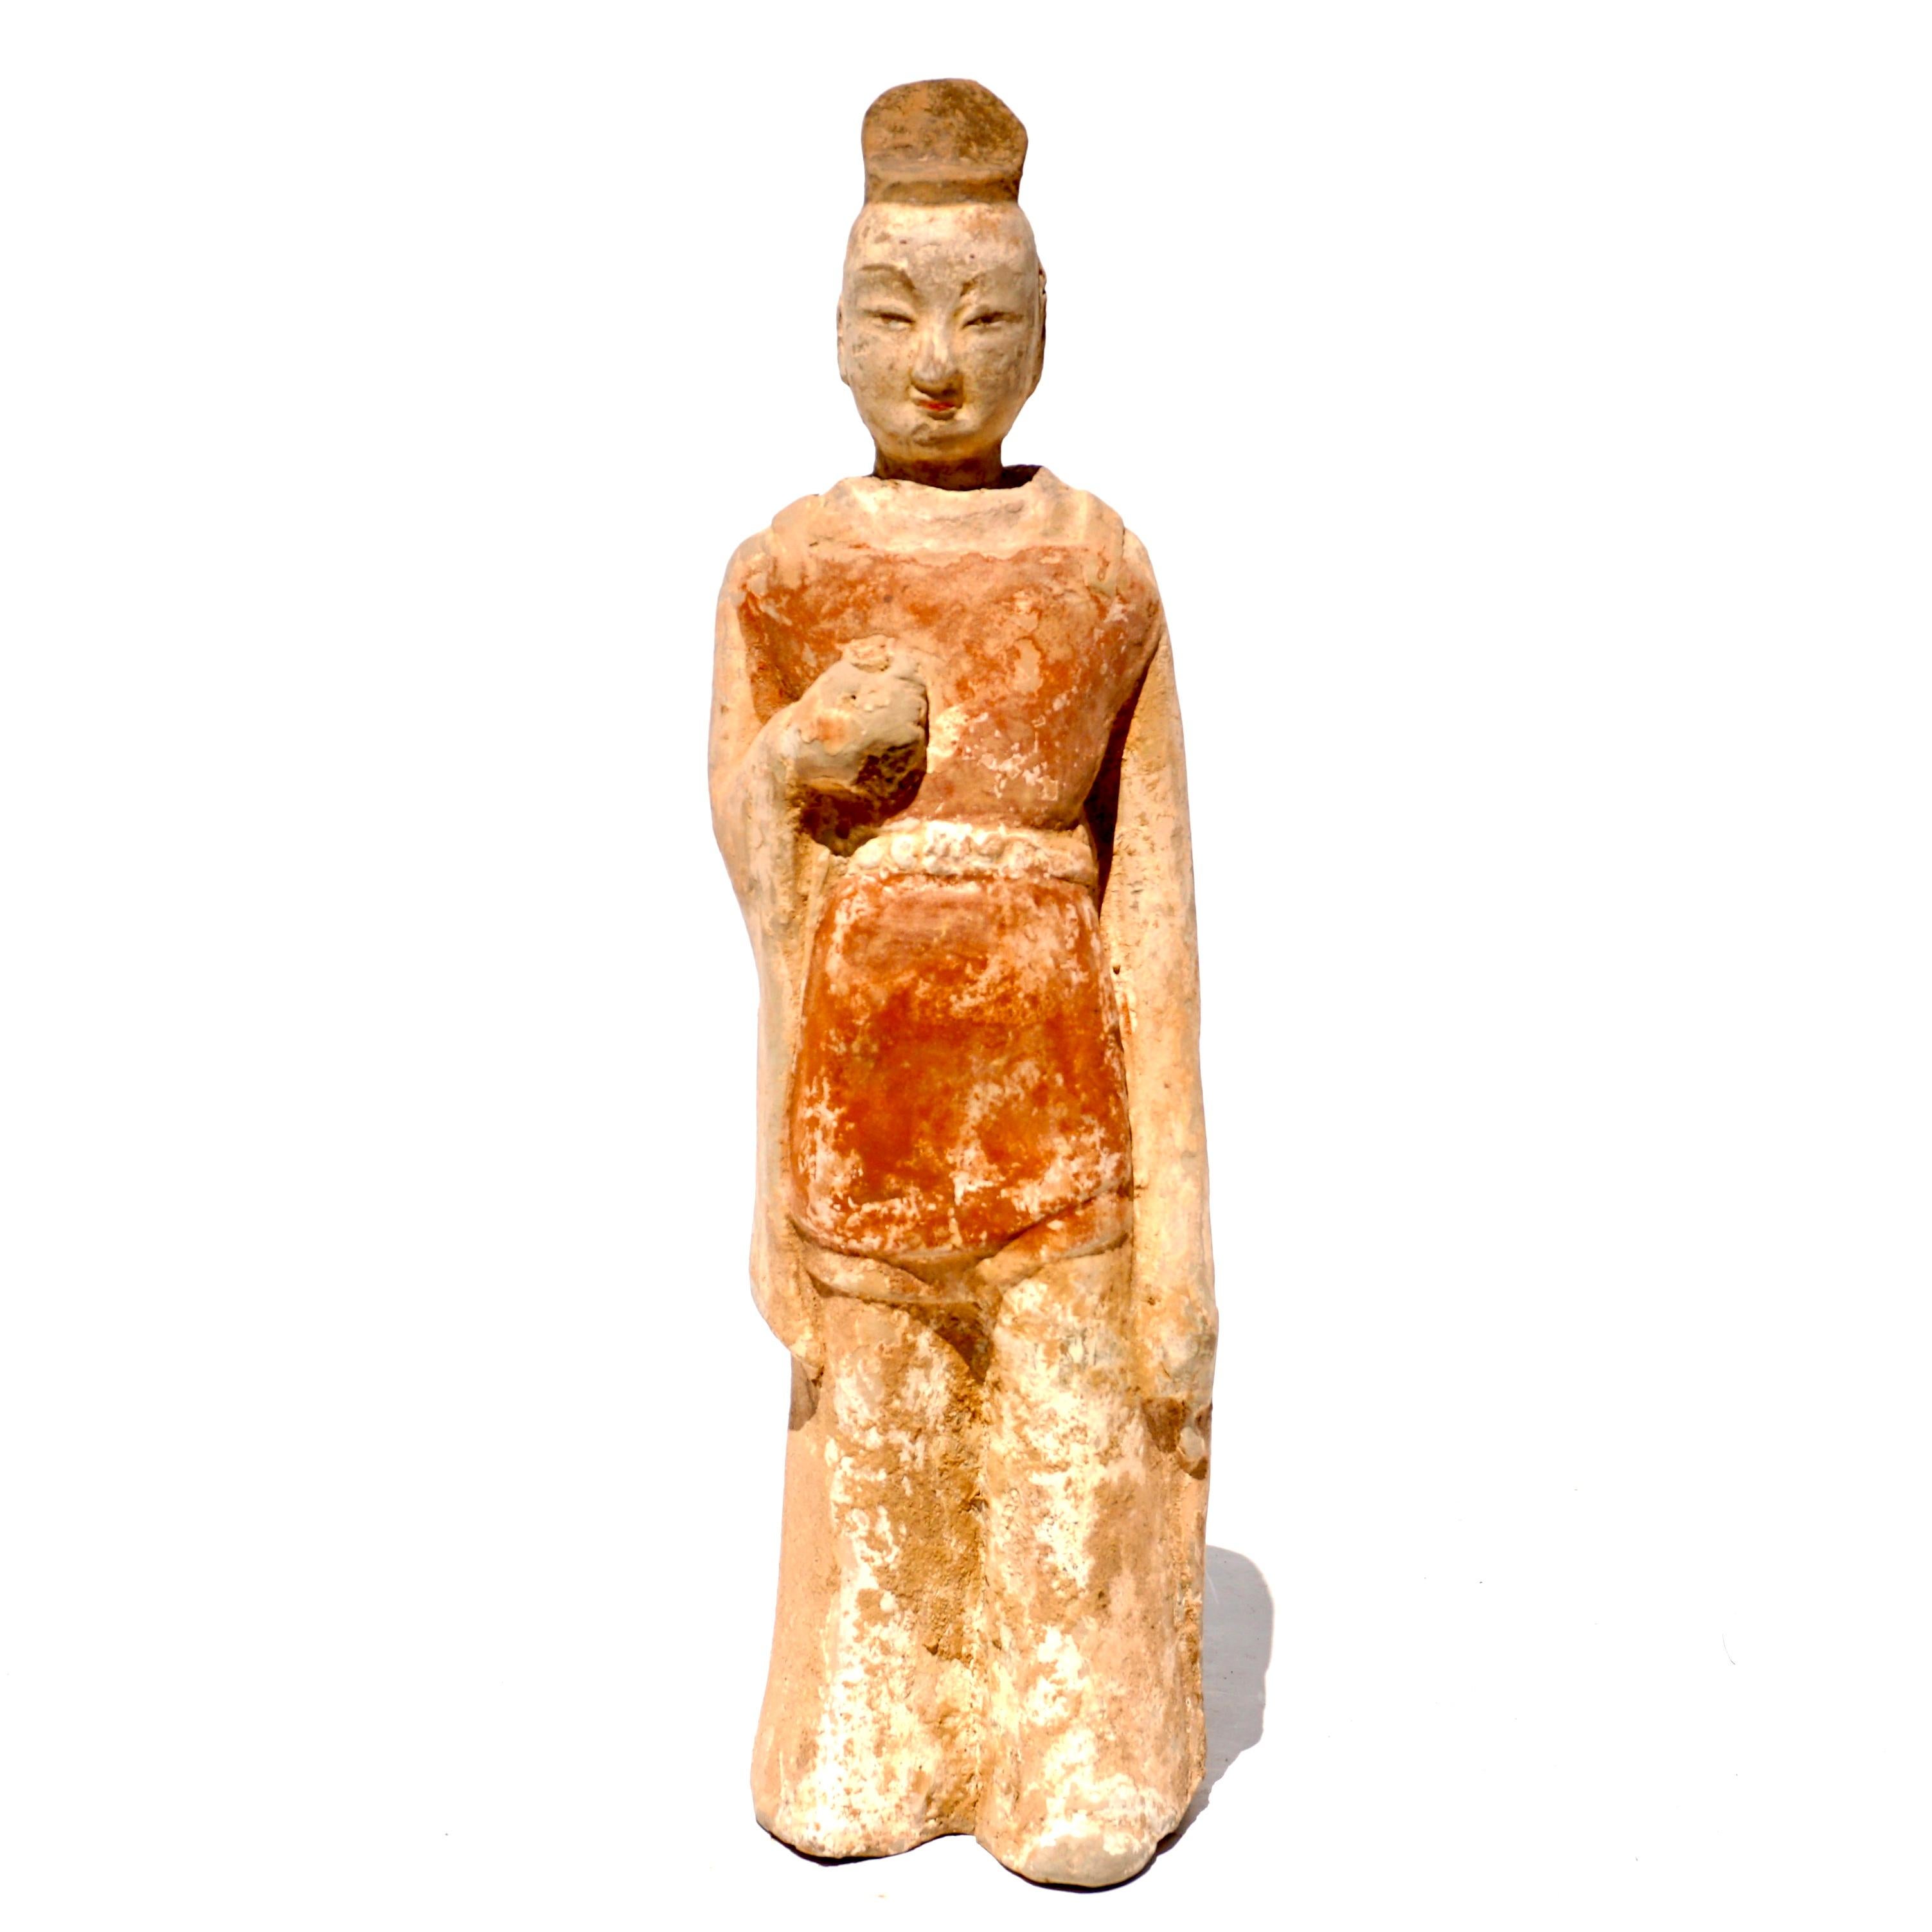 Circa 386-534 Statue de préposé en terre cuite de la Chine des Wei du Nord bien définie. 

Le personnage est représenté debout, les mains le long du corps, vêtu d'une robe rouge mi-longue à larges manches et d'un pantalon volumineux. Les figurines